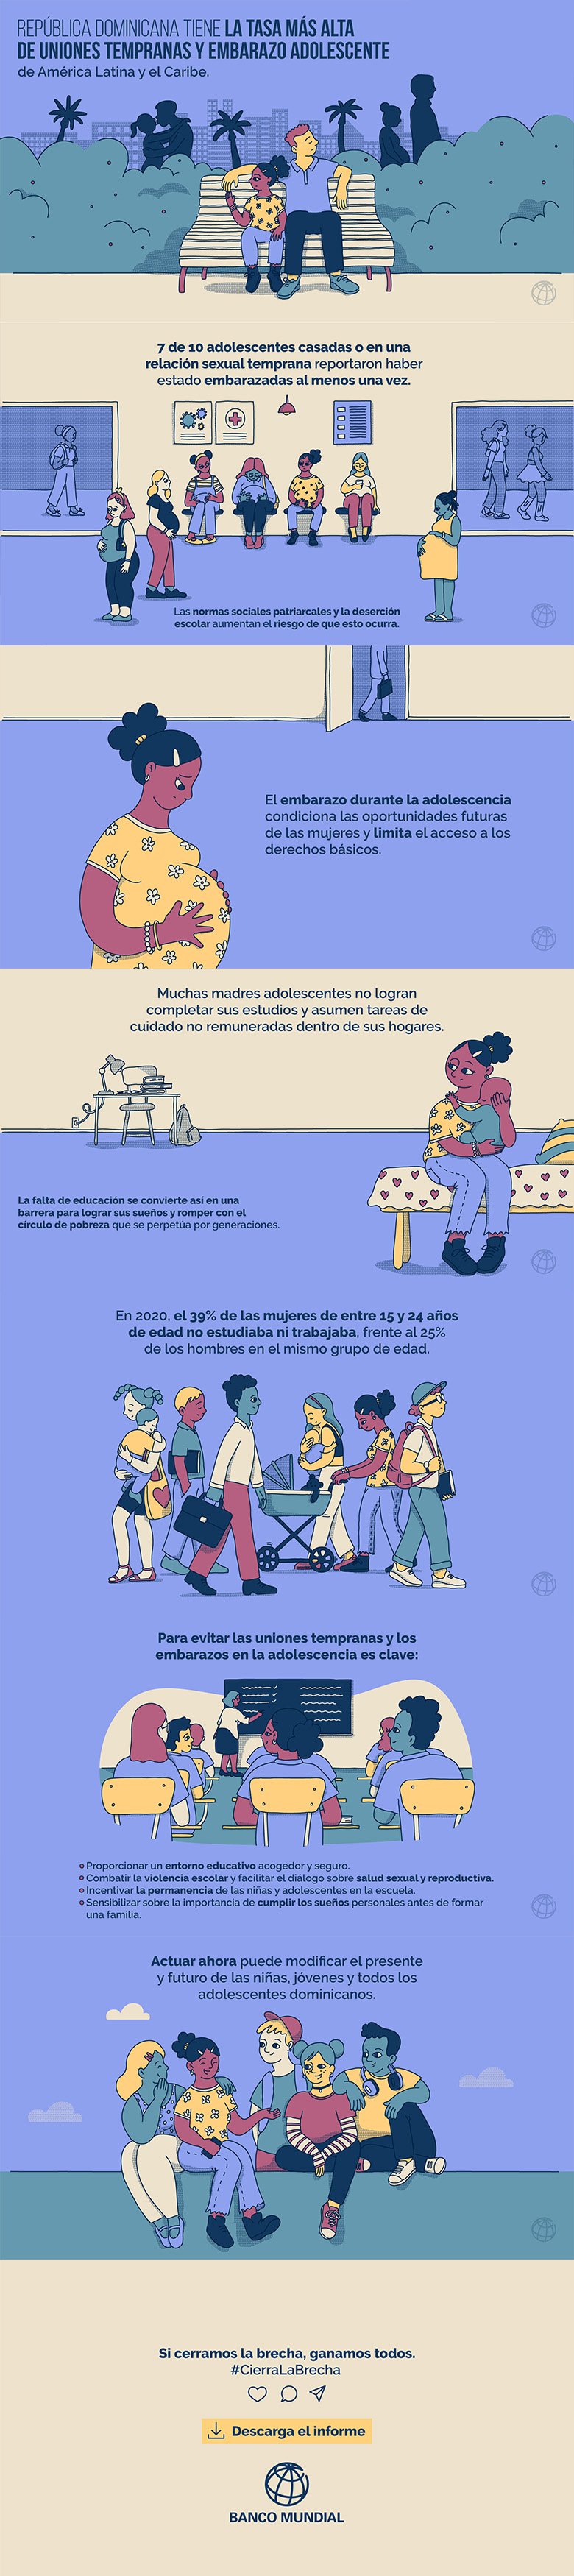 Infografía Género República Dominicana - Adolescencia